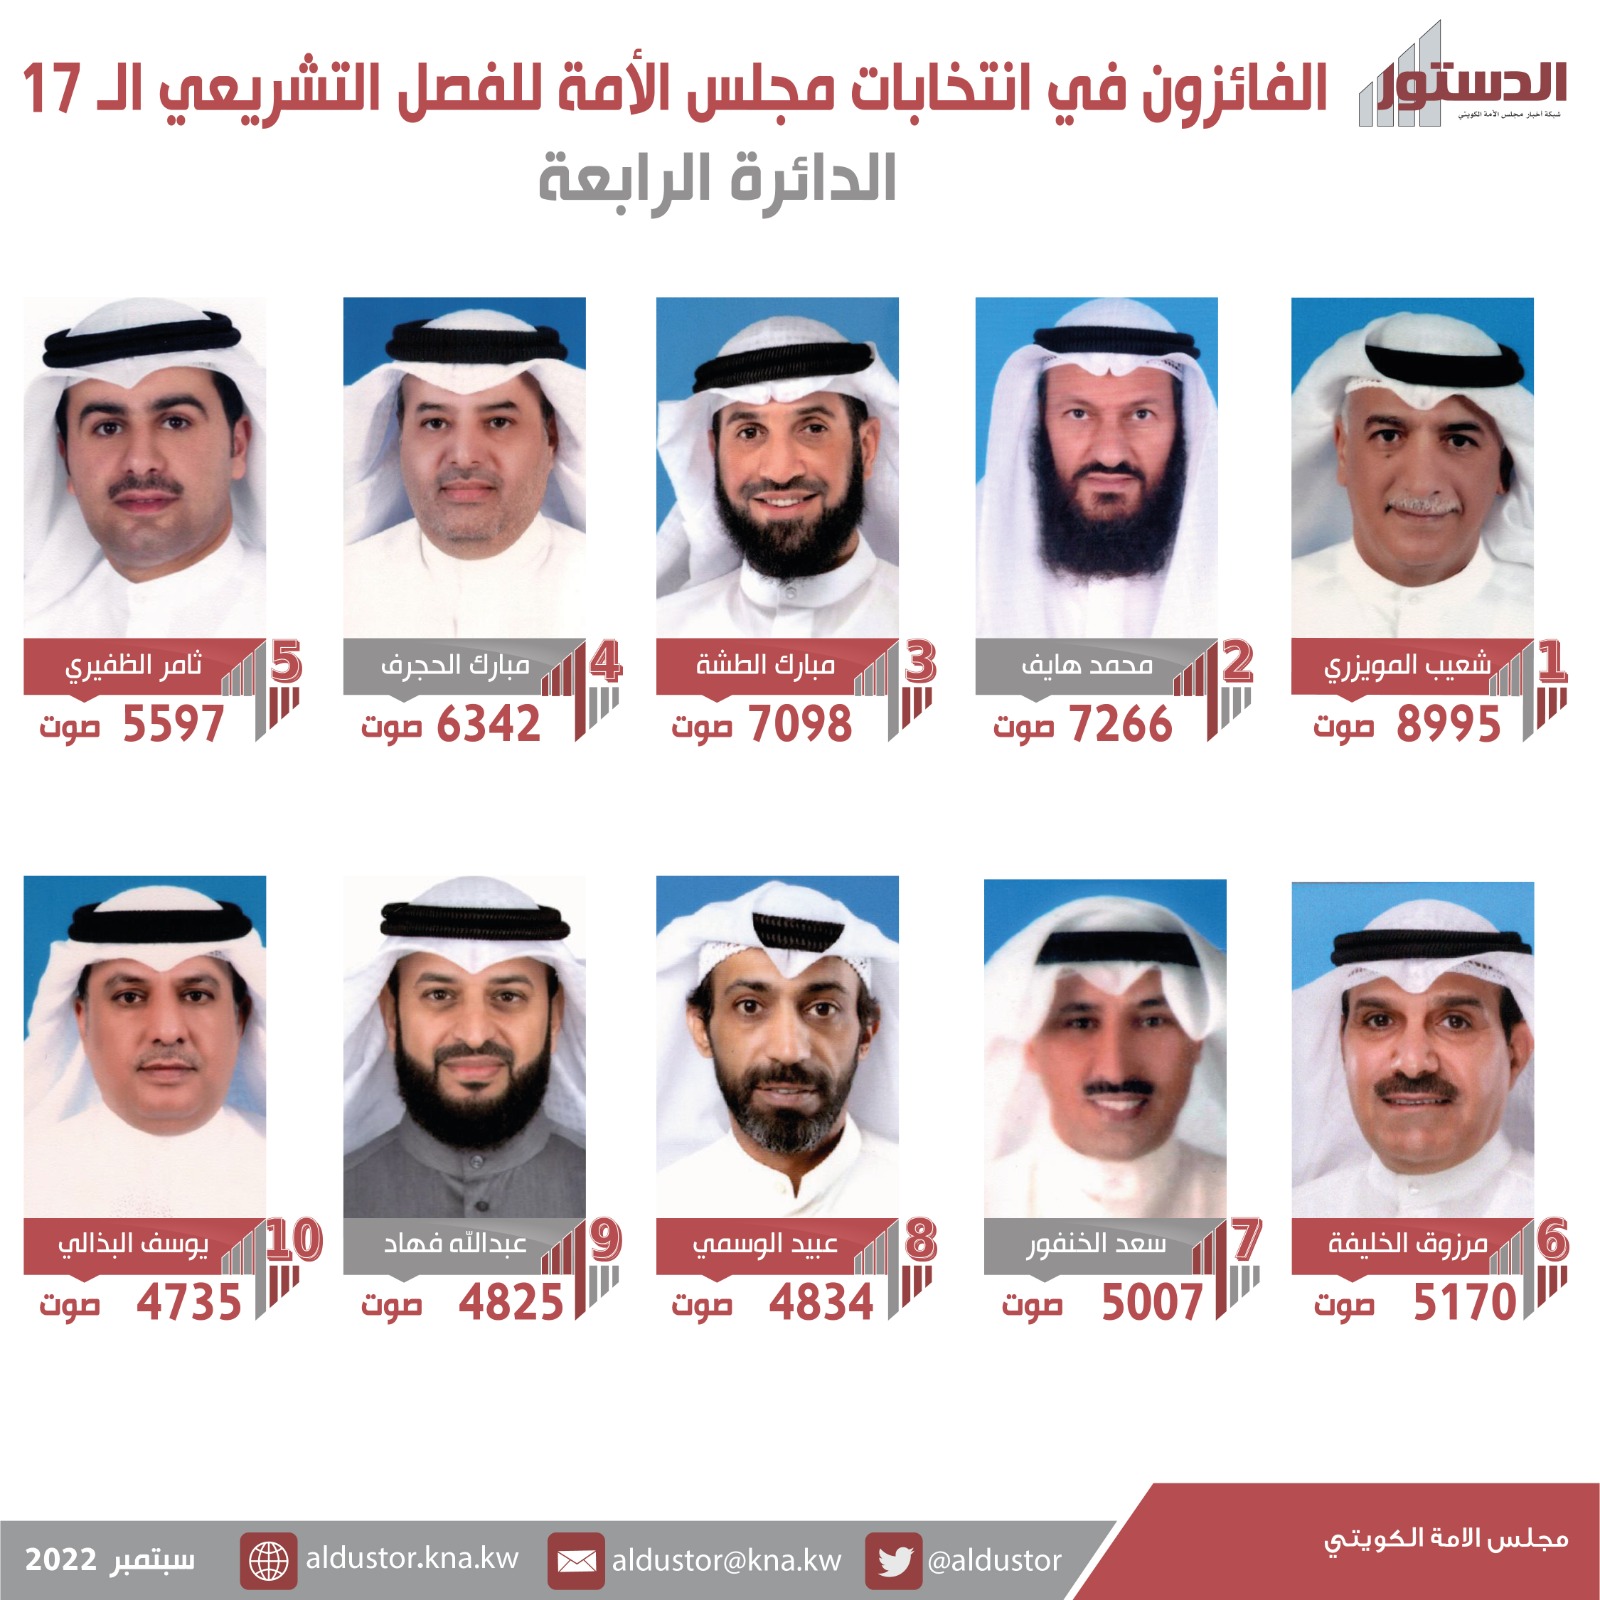 أسماء الفائزين بعضوية مجلس الأمة الكويتي (أمة 2022) عن الدائرة الانتخابية الرابعة